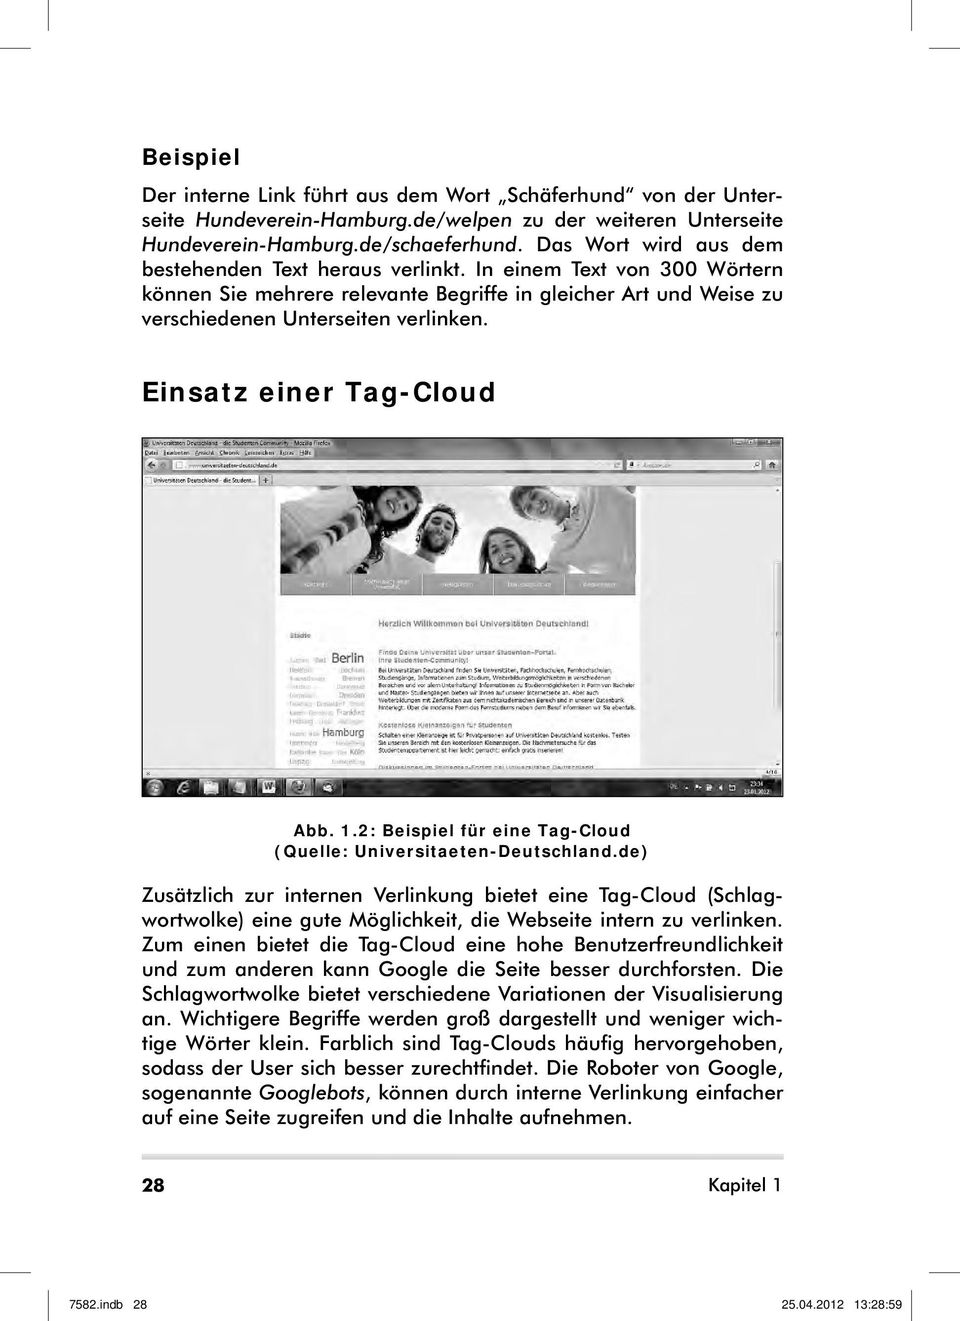 Einsatz einer Tag-Cloud Abb. 1.2: Beispiel für eine Tag-Cloud (Quelle: Universitaeten-Deutschland.